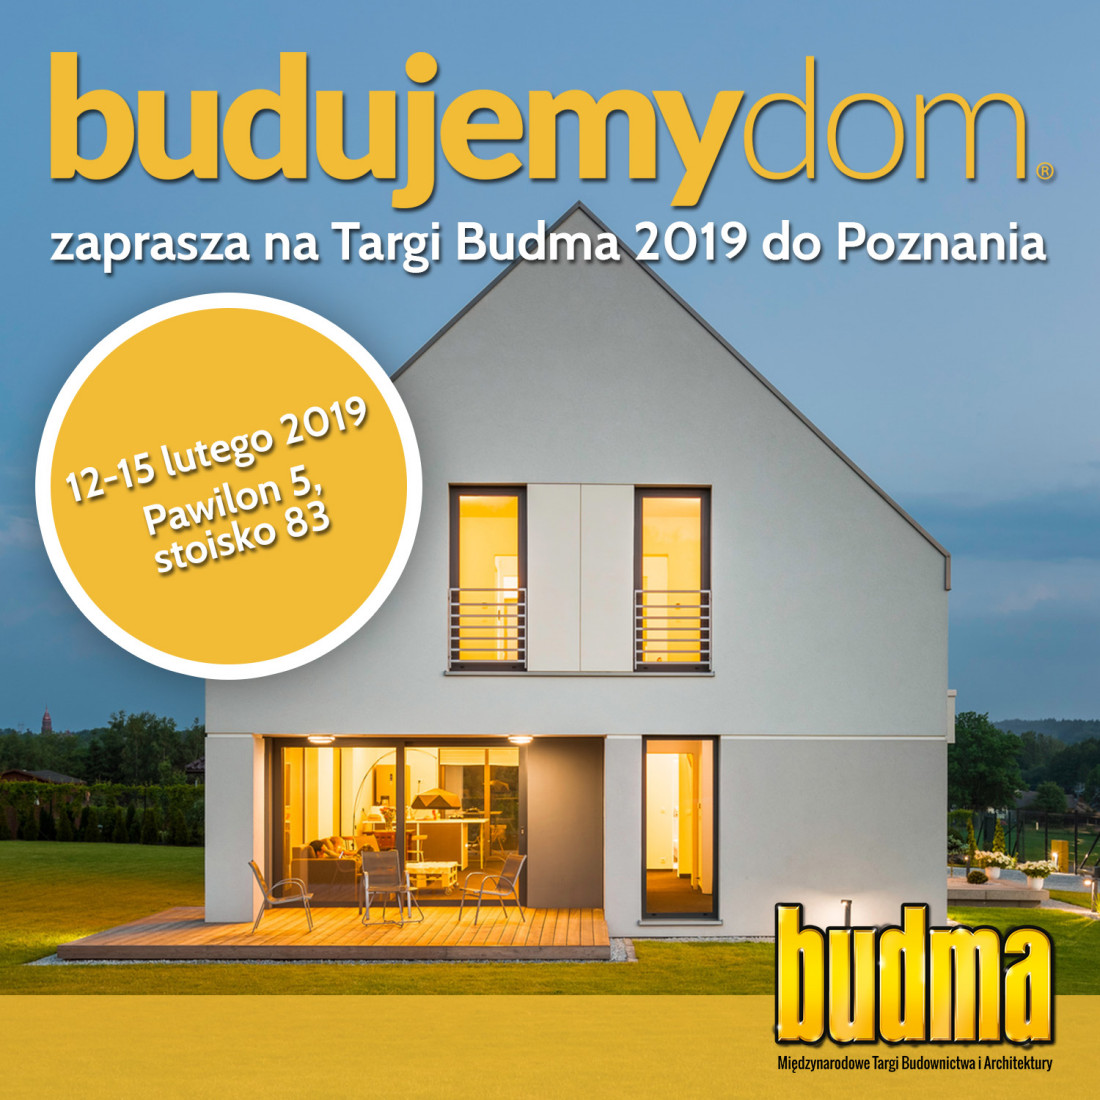 Budujemy Dom na Targach Budma 2019